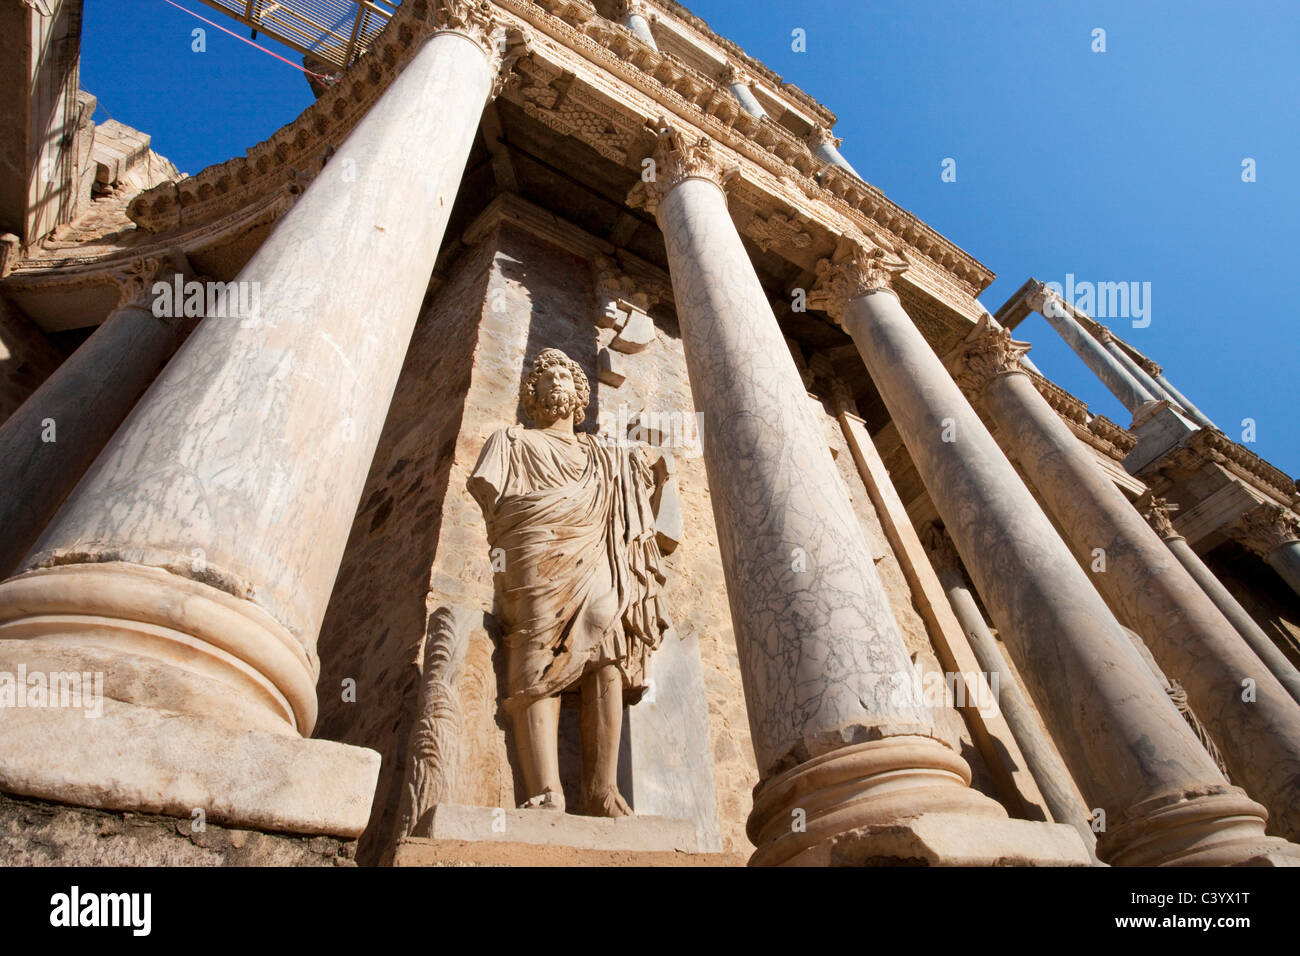 L'Espagne, l'Europe, Merida, l'UNESCO, patrimoine culturel, théâtre, Roman, amphithéâtre, colonnes, détail Banque D'Images